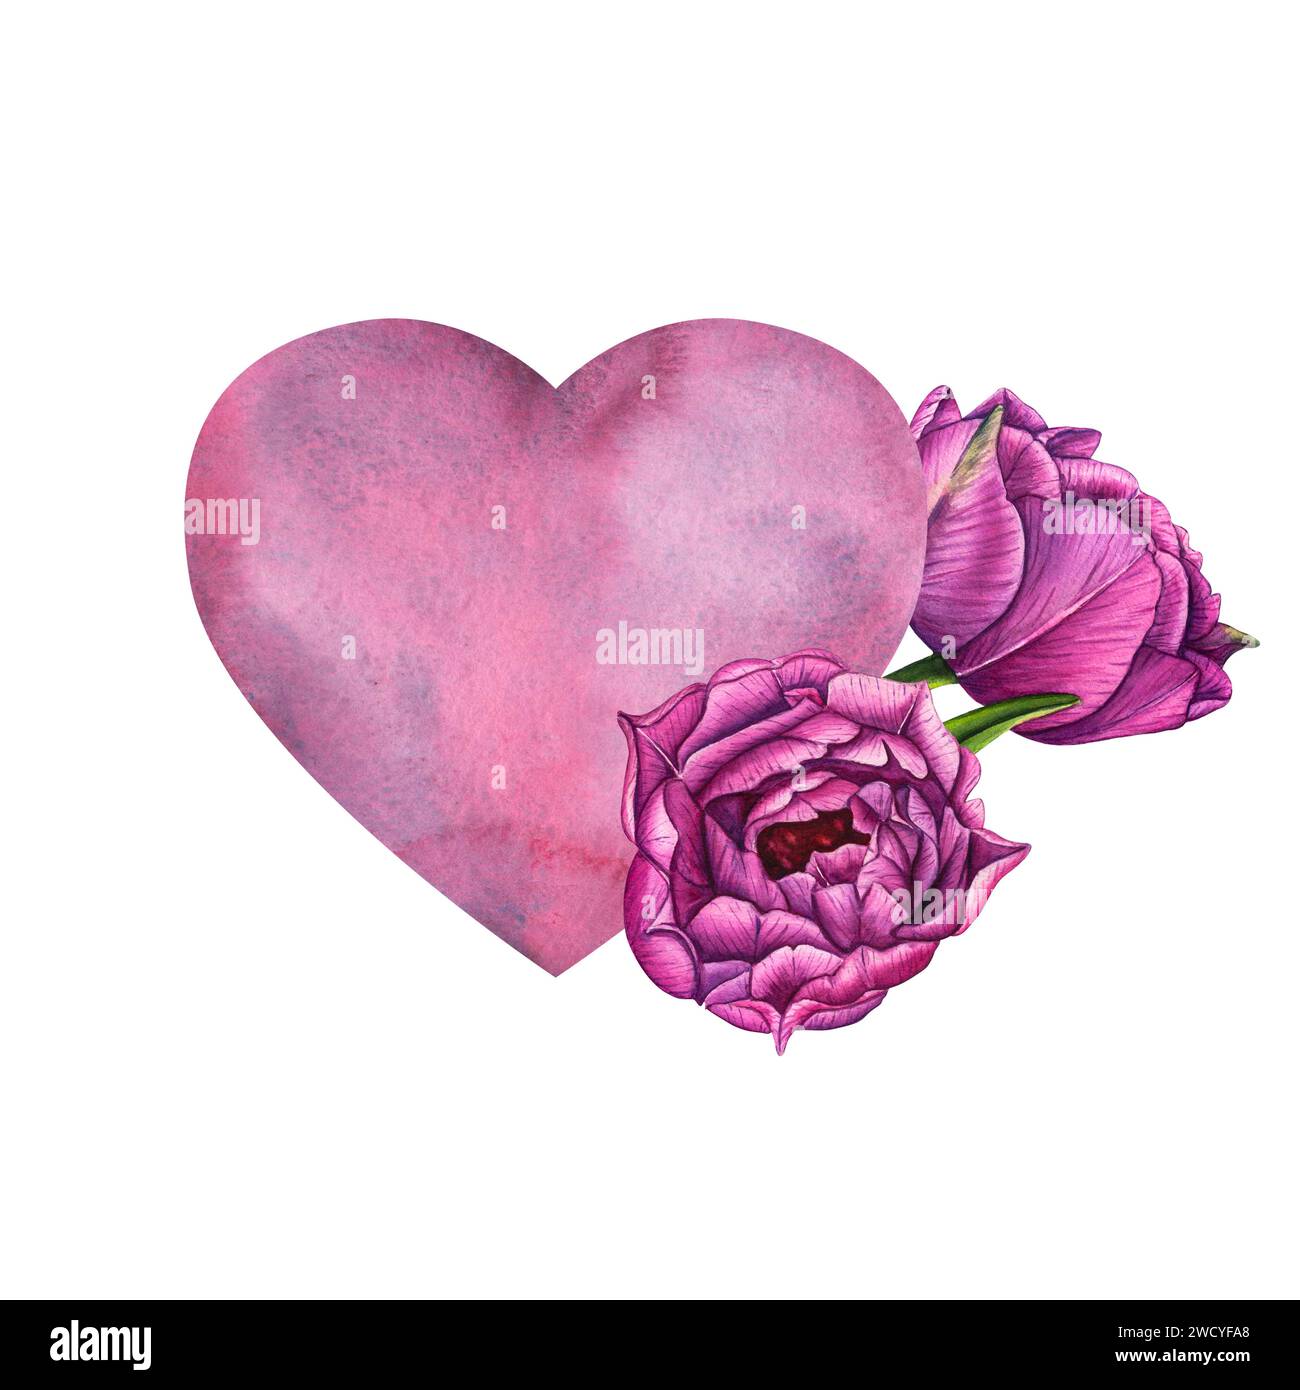 Semplice acquerello rosa-blu lilla ascolta i tulipani viola per un biglietto da visita o una t-shirt di San Valentino. Romanticismo, relazione e amore. Illus cardiaco Foto Stock